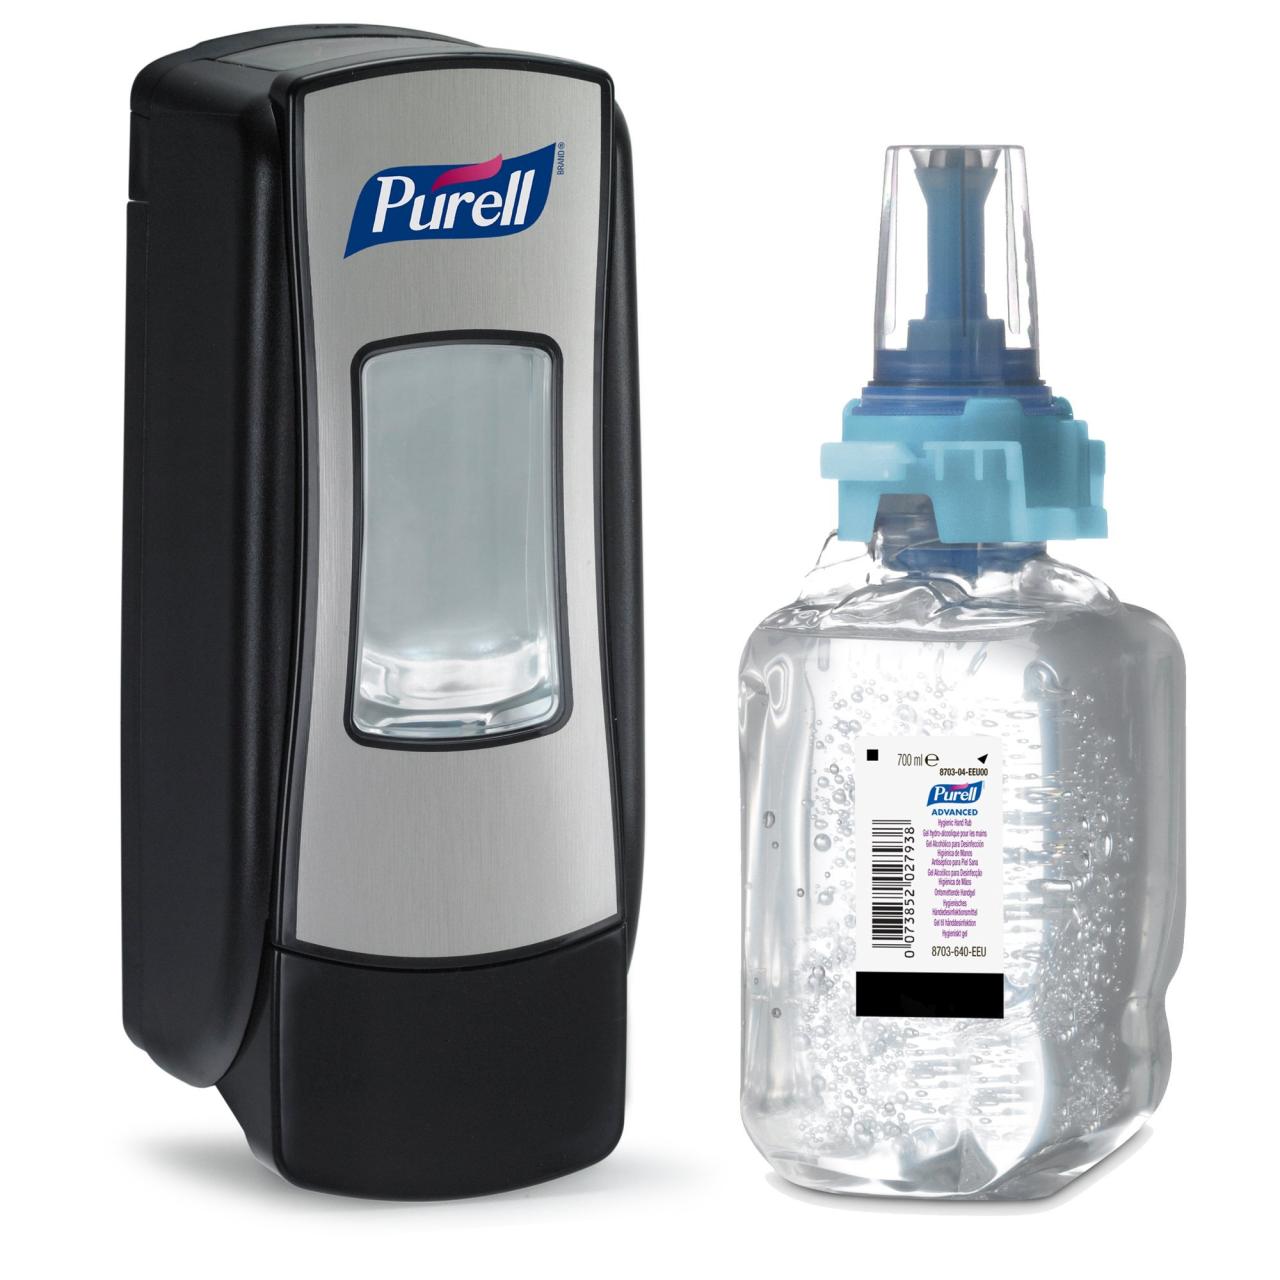 Dispenser Purell ADX 7, crom/negru, capacitate 700 ml